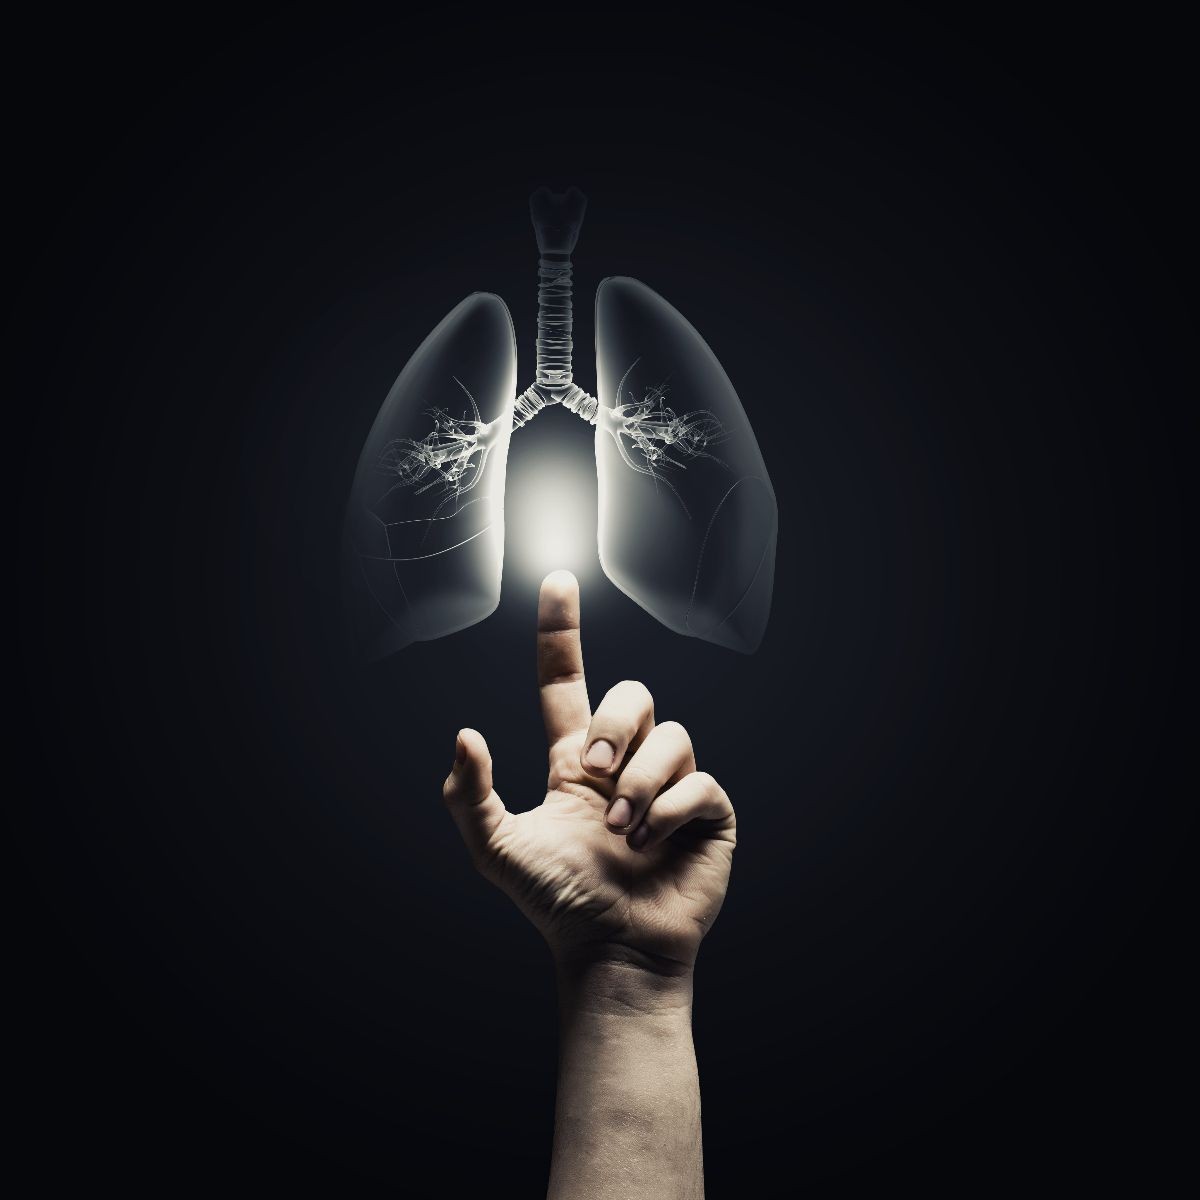 Mano alcanzando un ilustración iluminada de un pulmón en un fondo negro